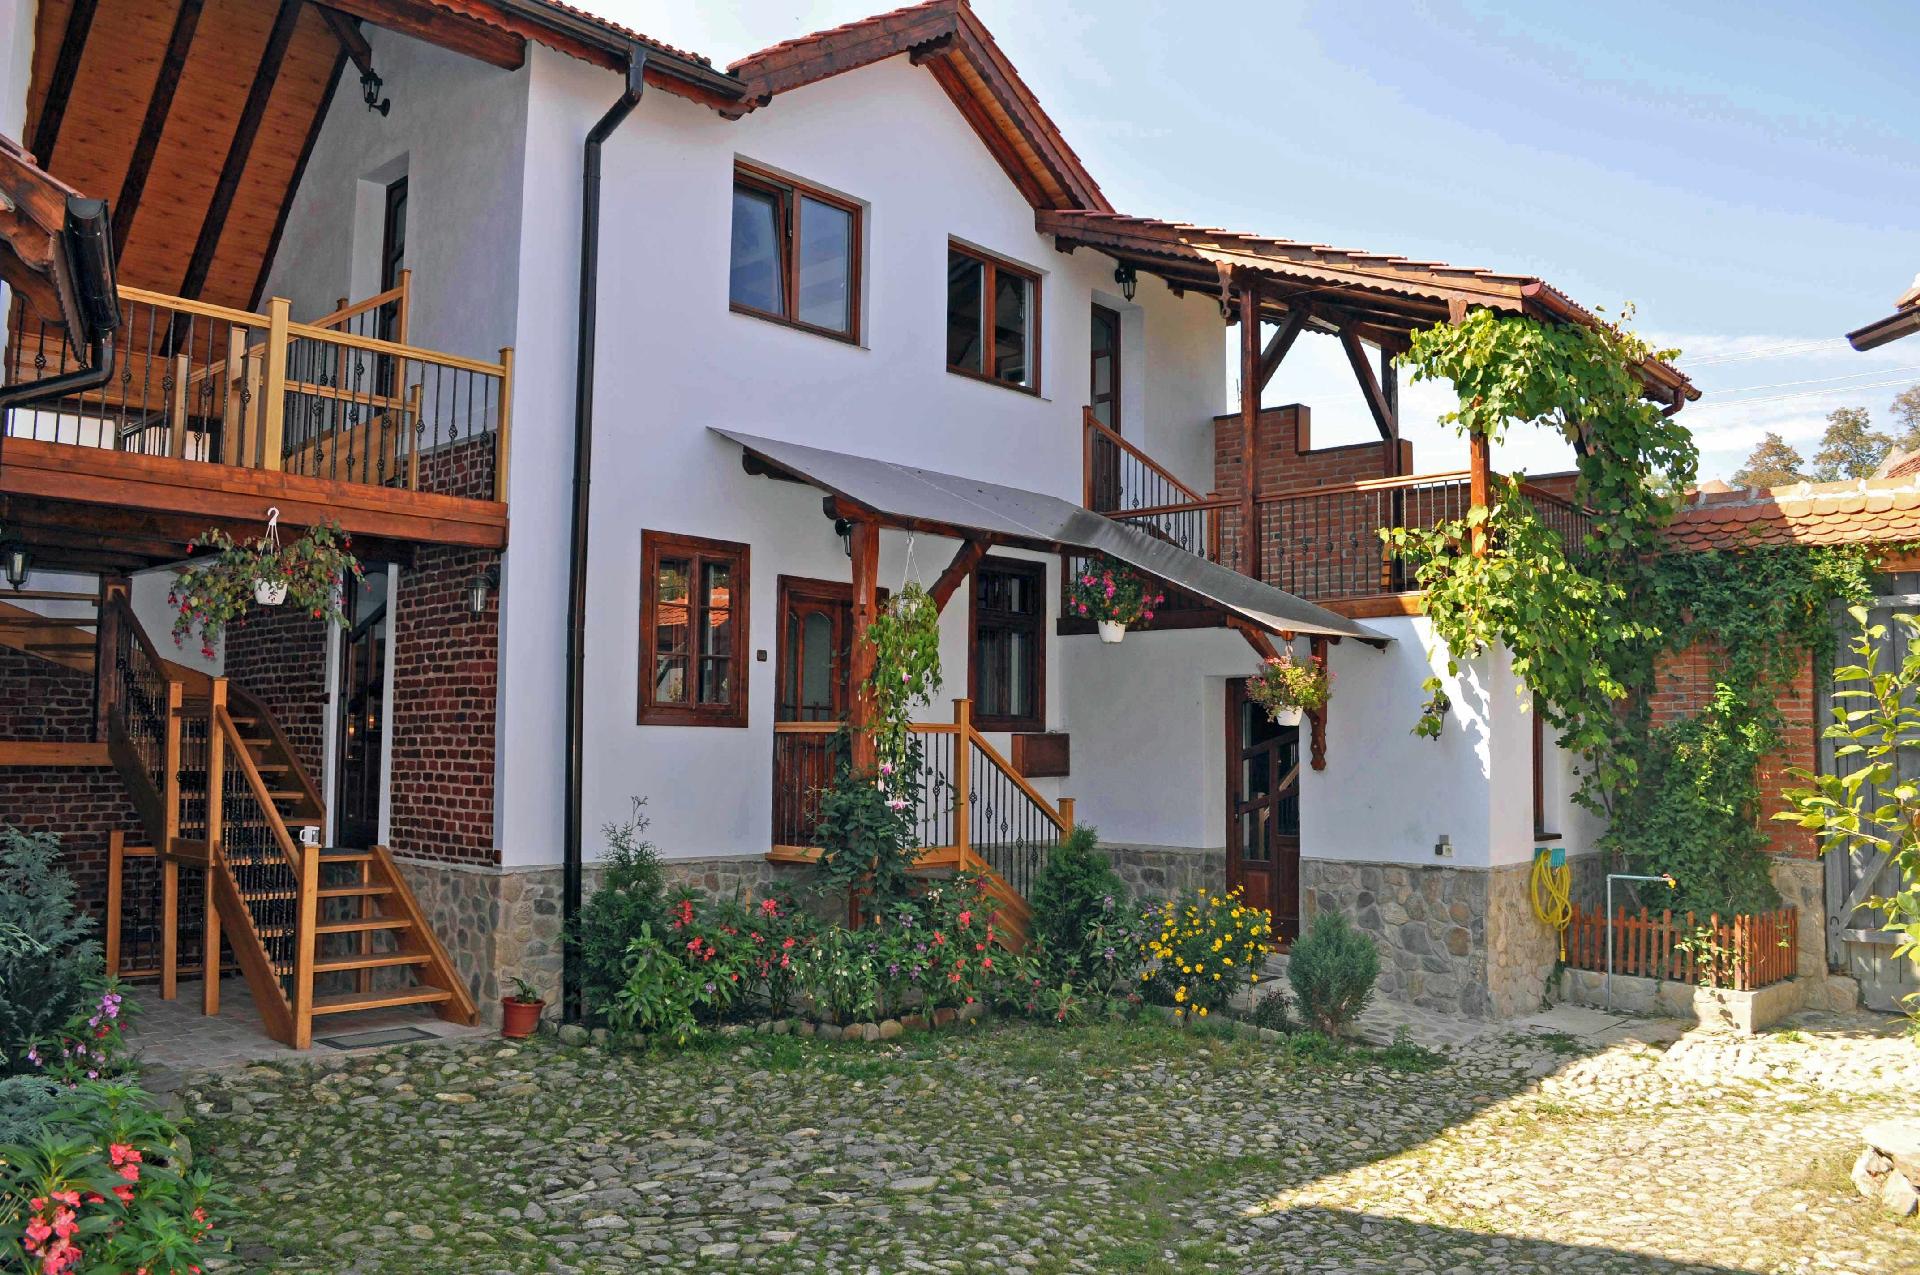 CASA VALE - 6 Ferienhäuser in urigem Hirtendo  in Rumänien